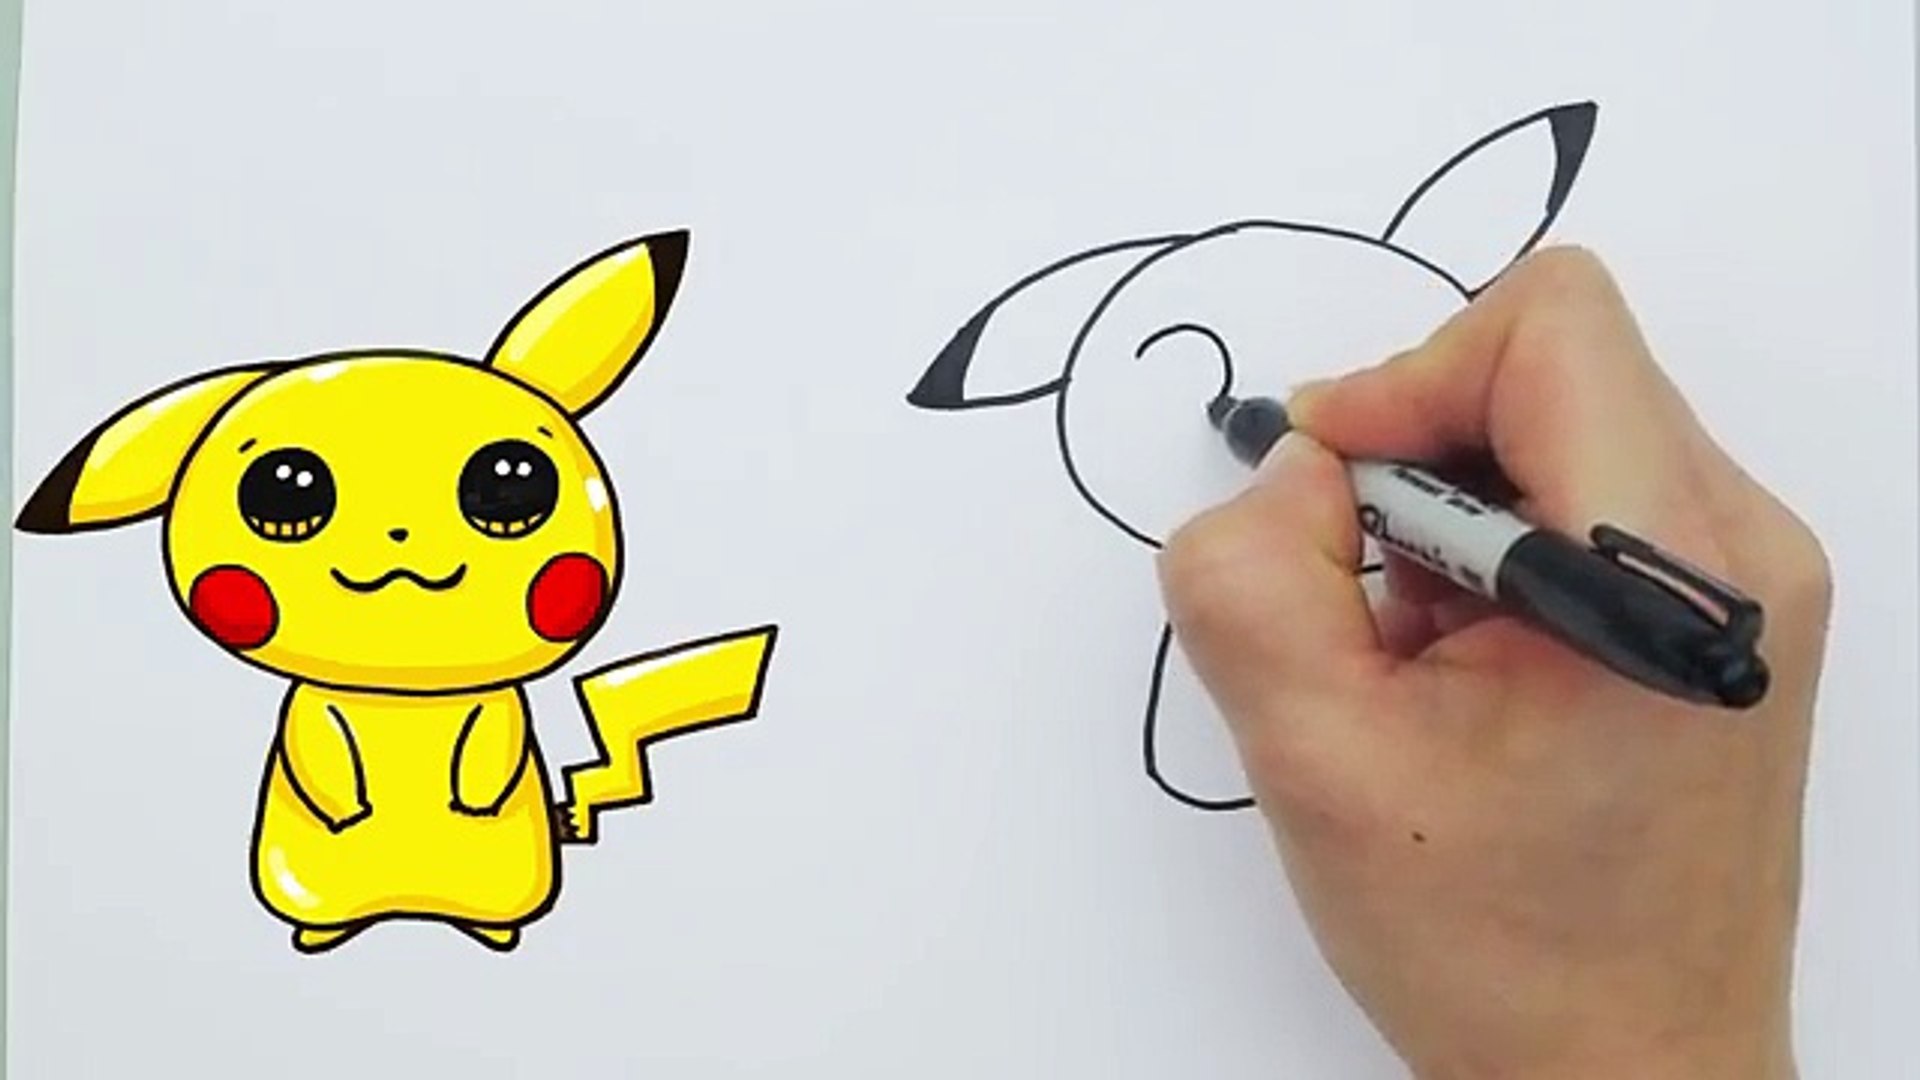 Những người yêu thích Pokemon Go và Pikachu đáng yêu đâu rồi? Hãy cùng tham gia và học hỏi cách vẽ Pikachu đơn giản thông qua video này nhé!